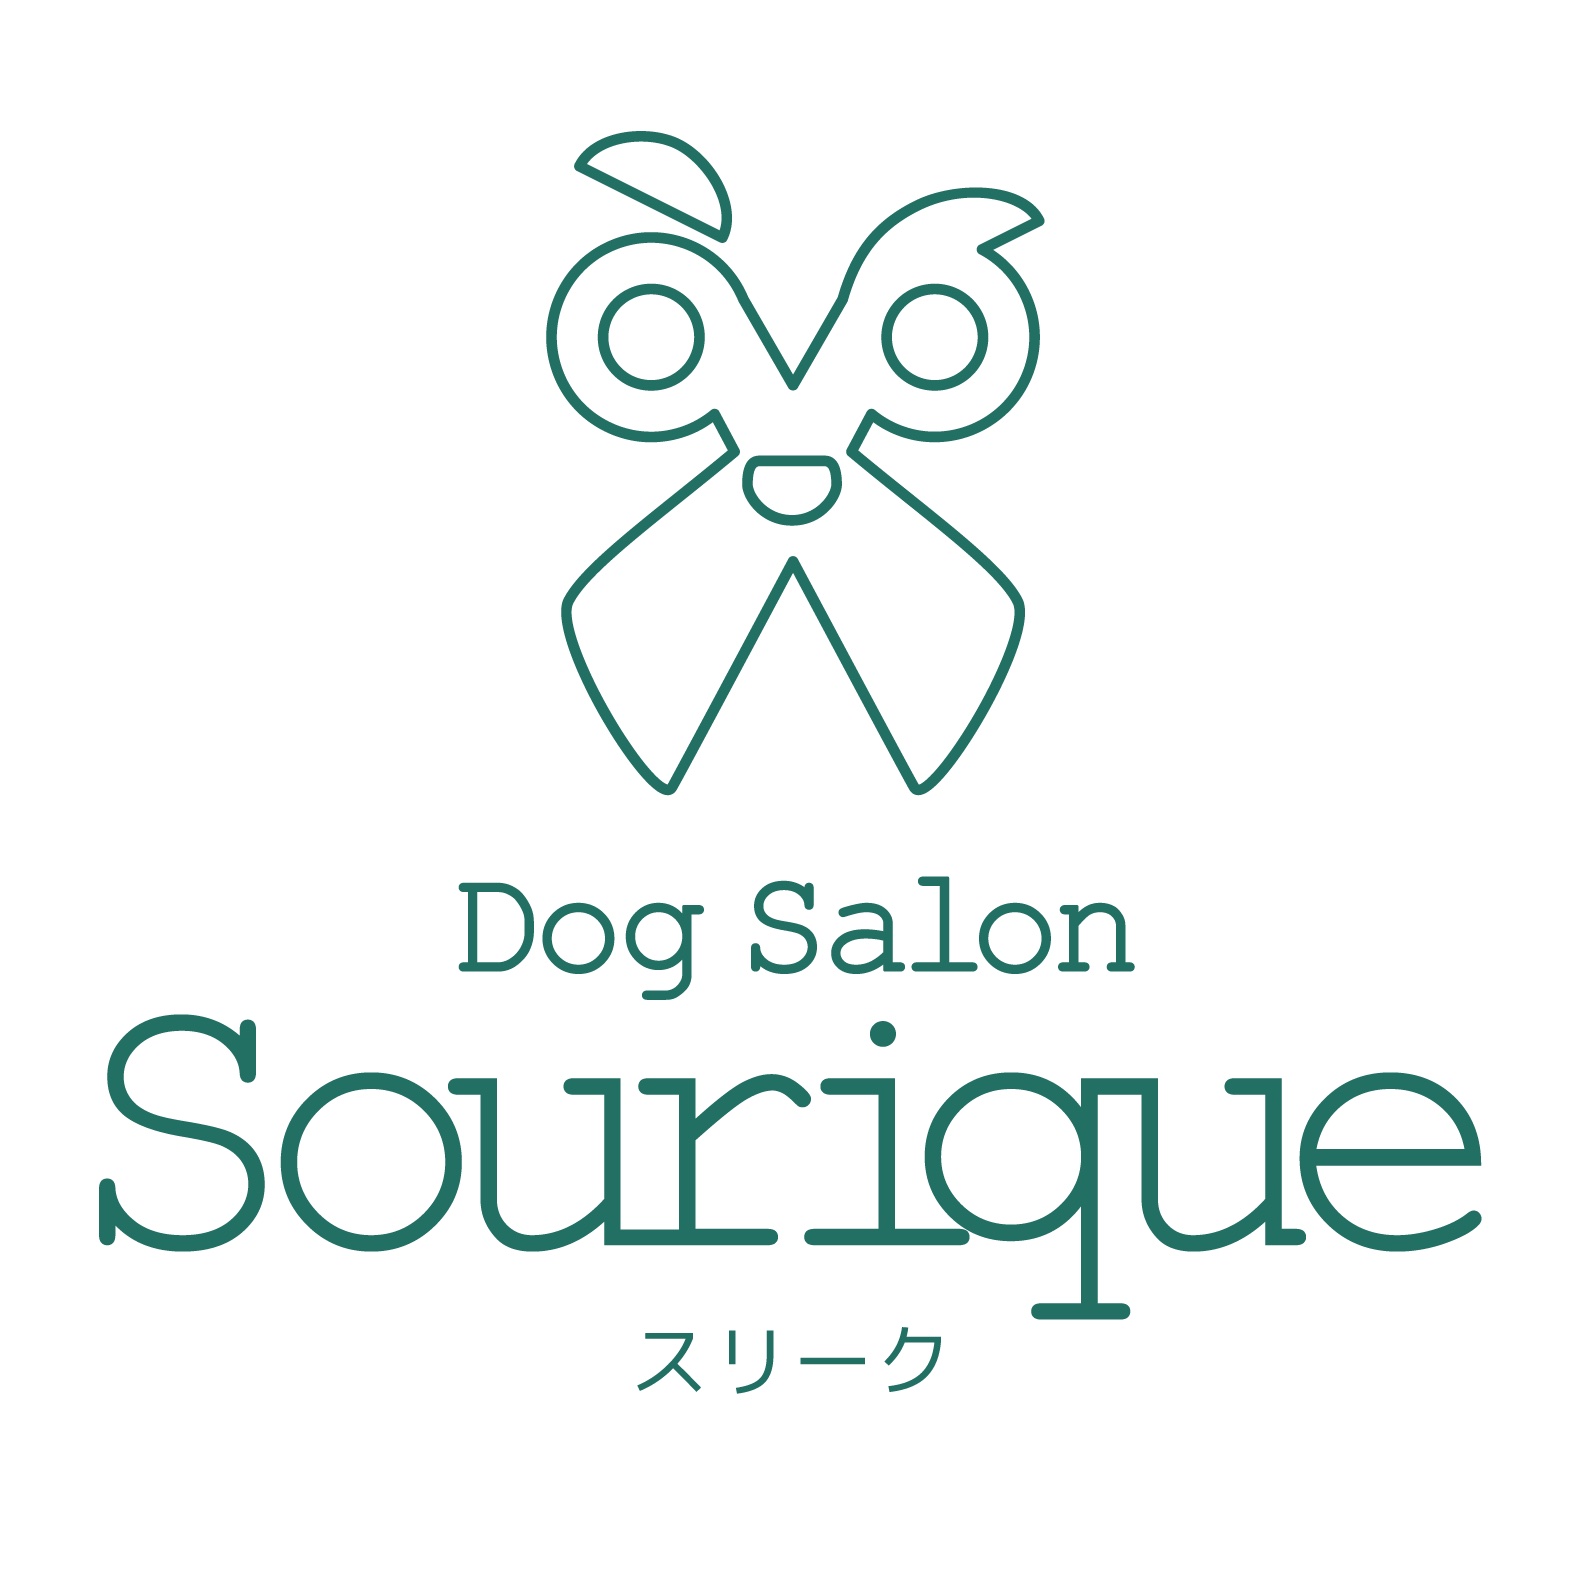 Dog Salon Sourique のサムネイル